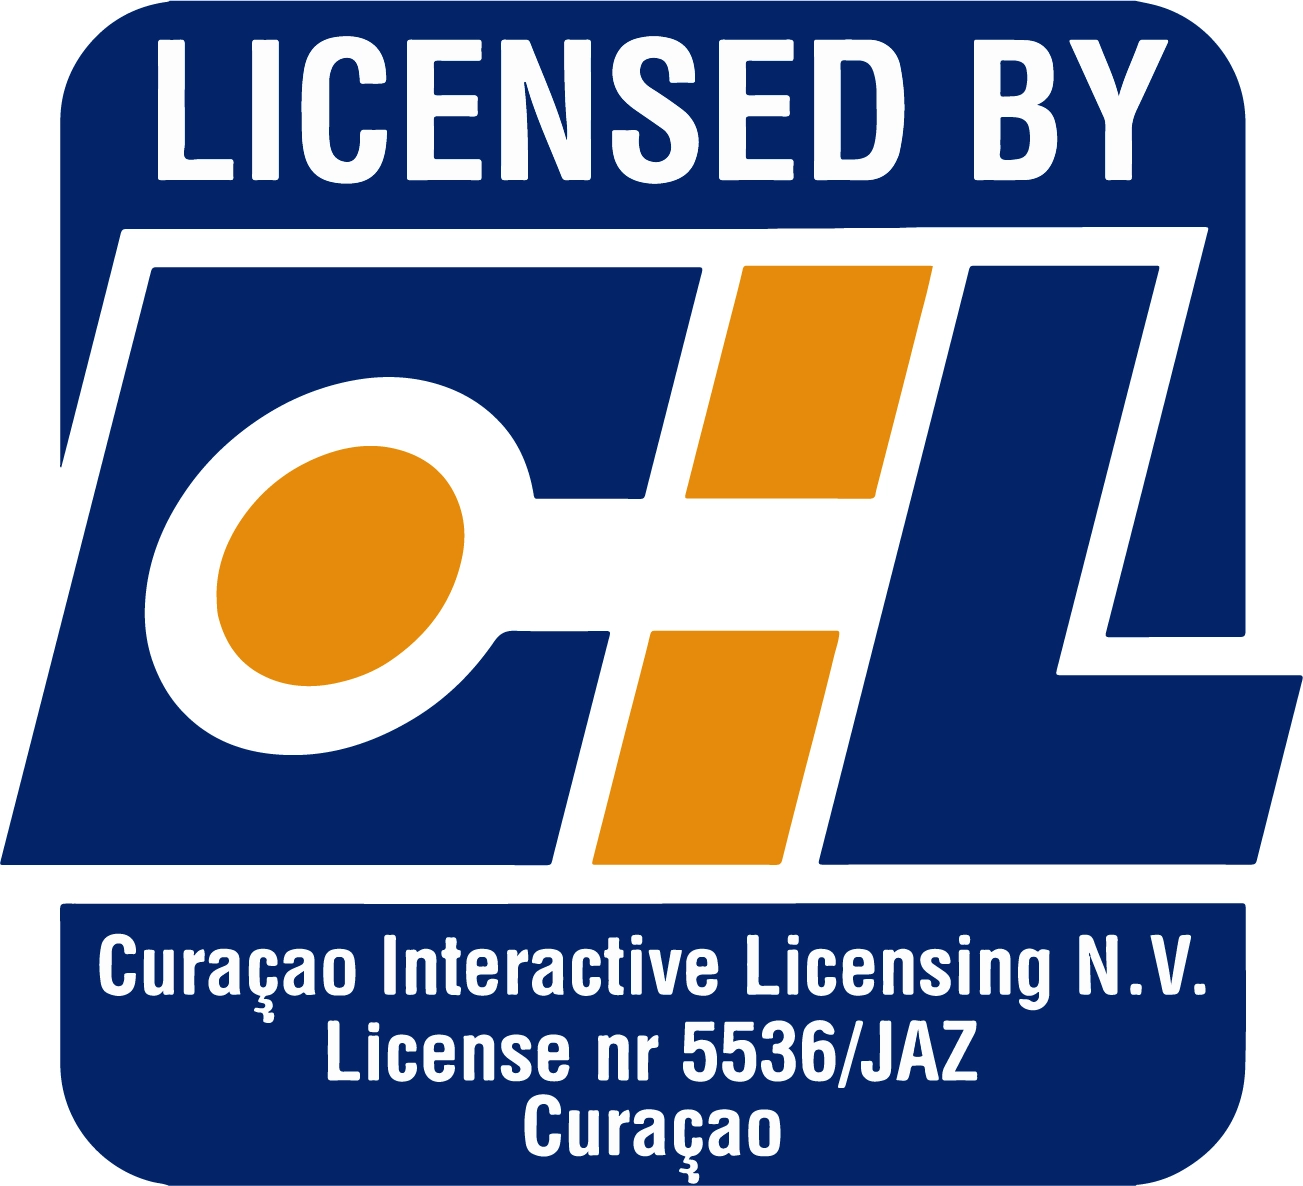 4571-cil-license-logocuracao-16793137808925-17054976223934.png